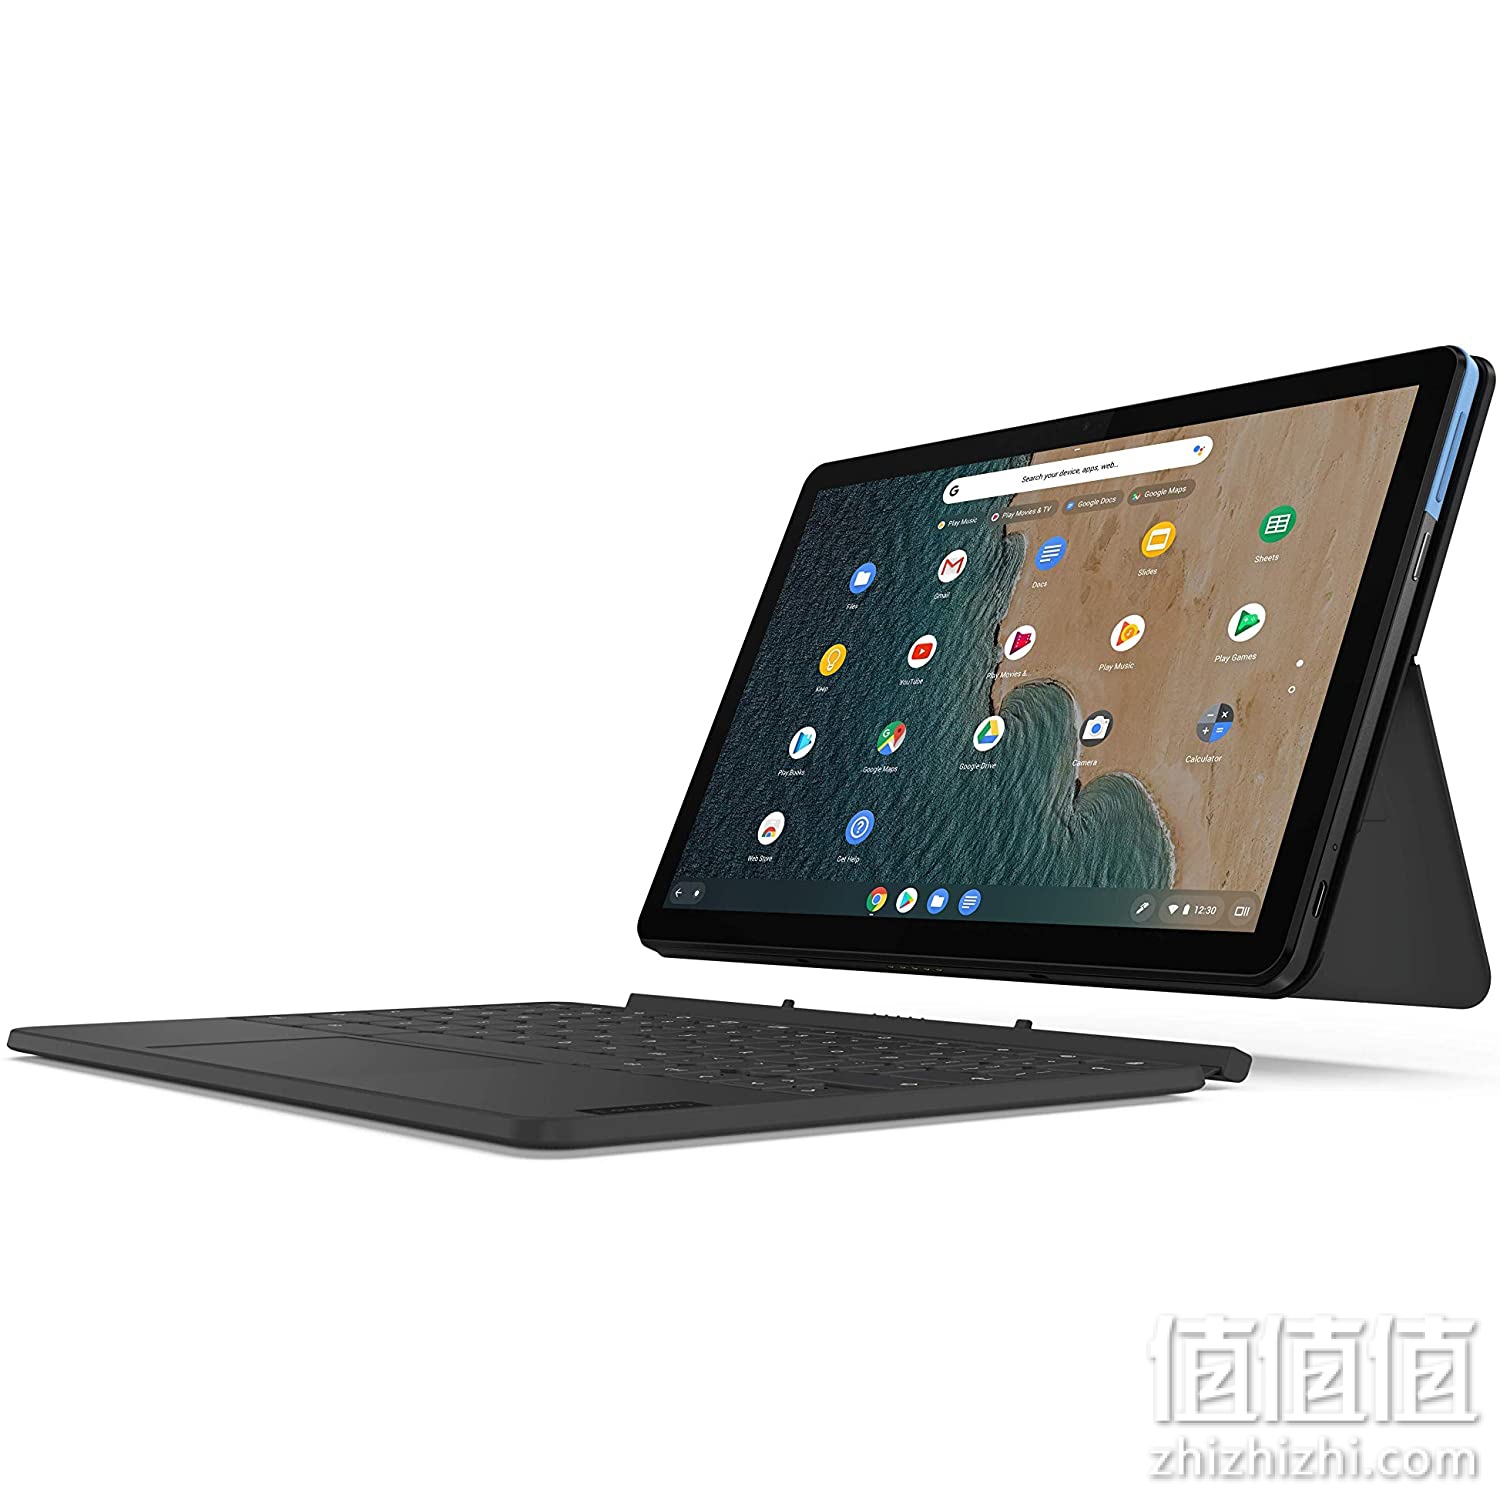 Lenovo  联想 Ideapad Duet Chromebook 10.1英寸笔记本电脑 触屏平板电脑 64GB 德语QWERTZ键盘布局，蓝色/灰色